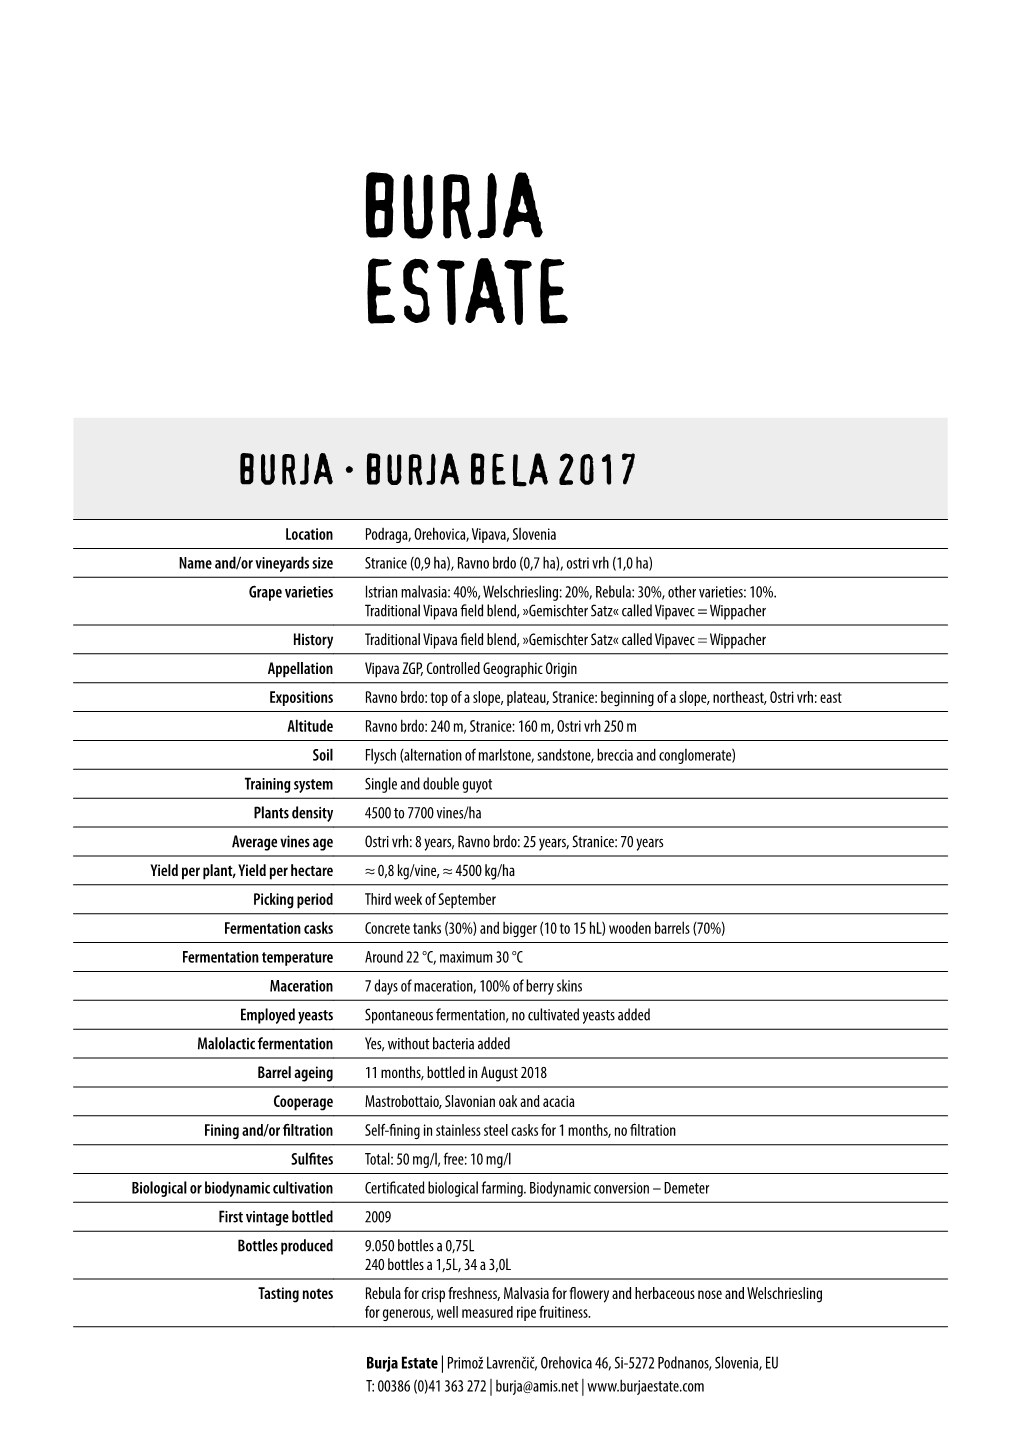 Burja Estate